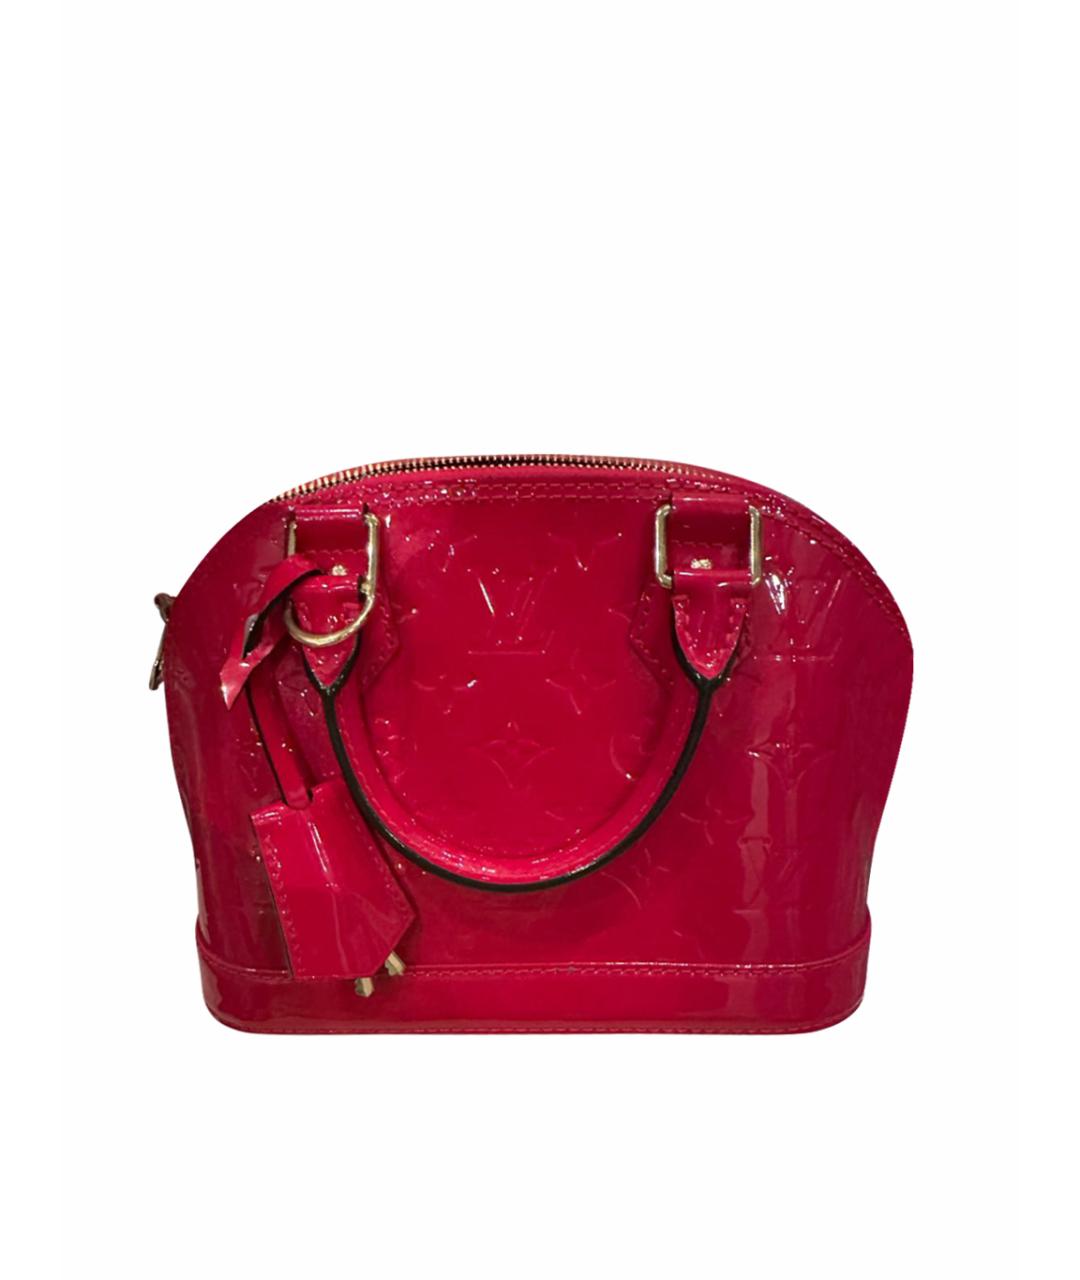 LOUIS VUITTON PRE-OWNED Красная сумка с короткими ручками из лакированной кожи, фото 1